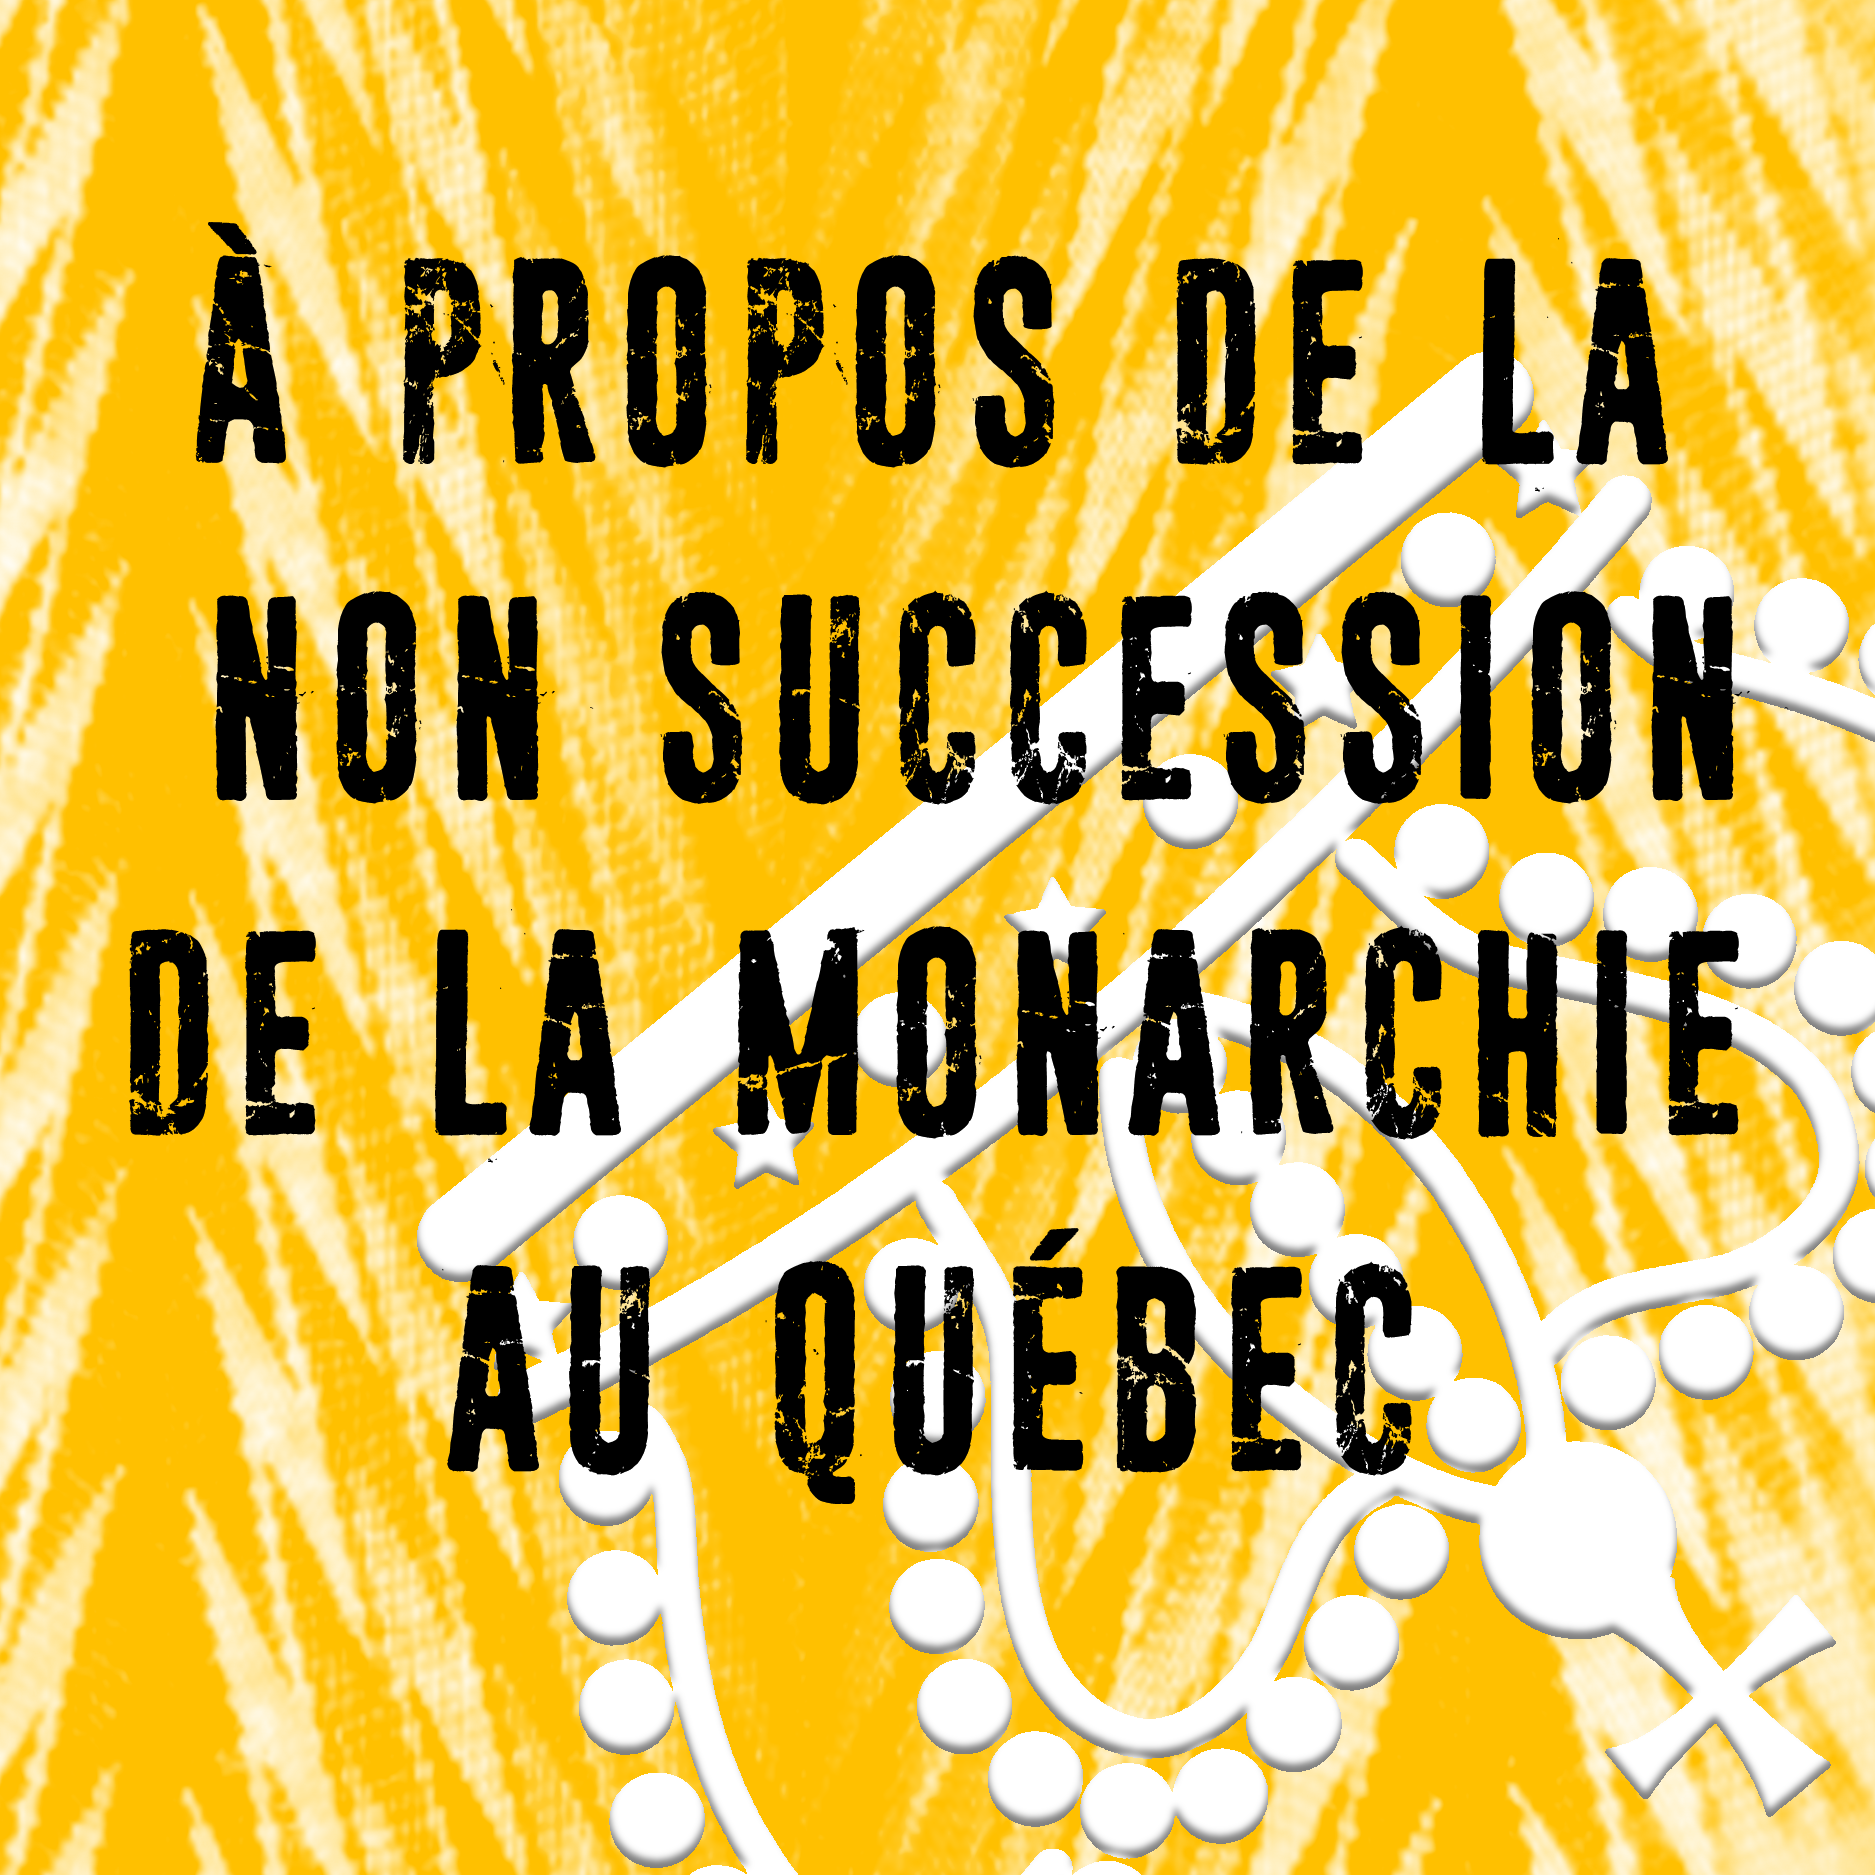 non succession monarchie